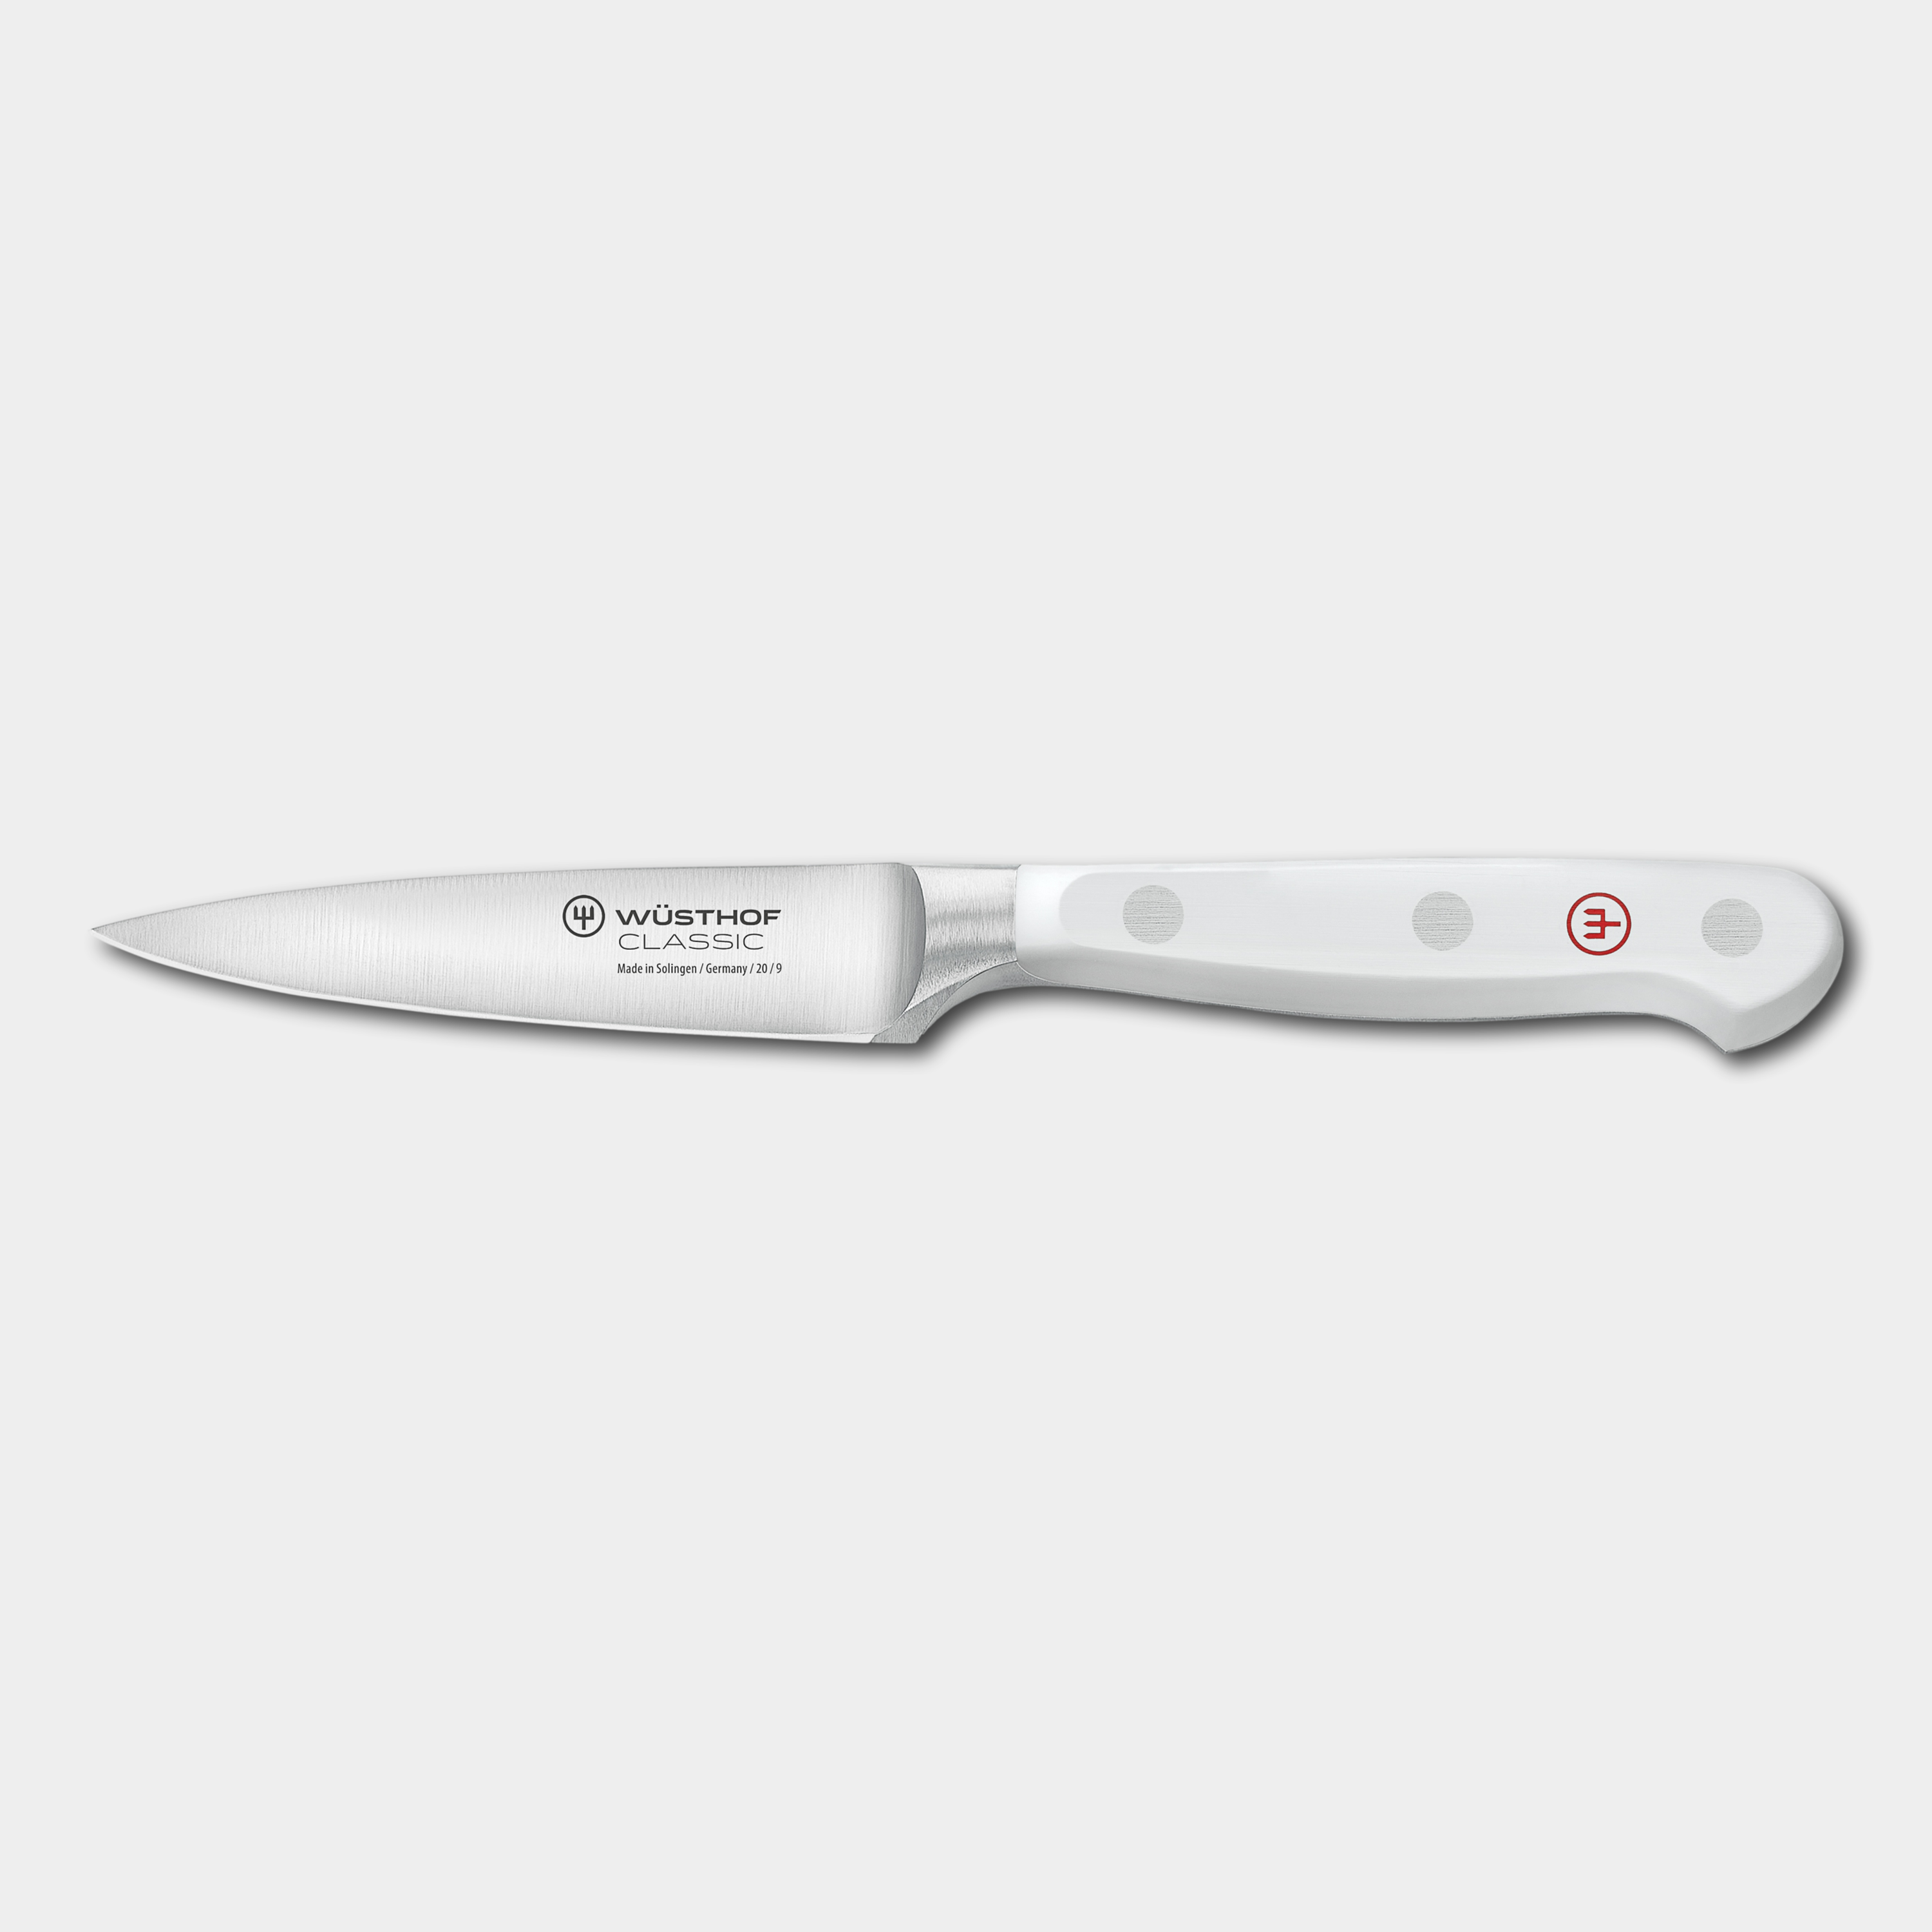 Wusthof Classic White 9cm Paring Knife